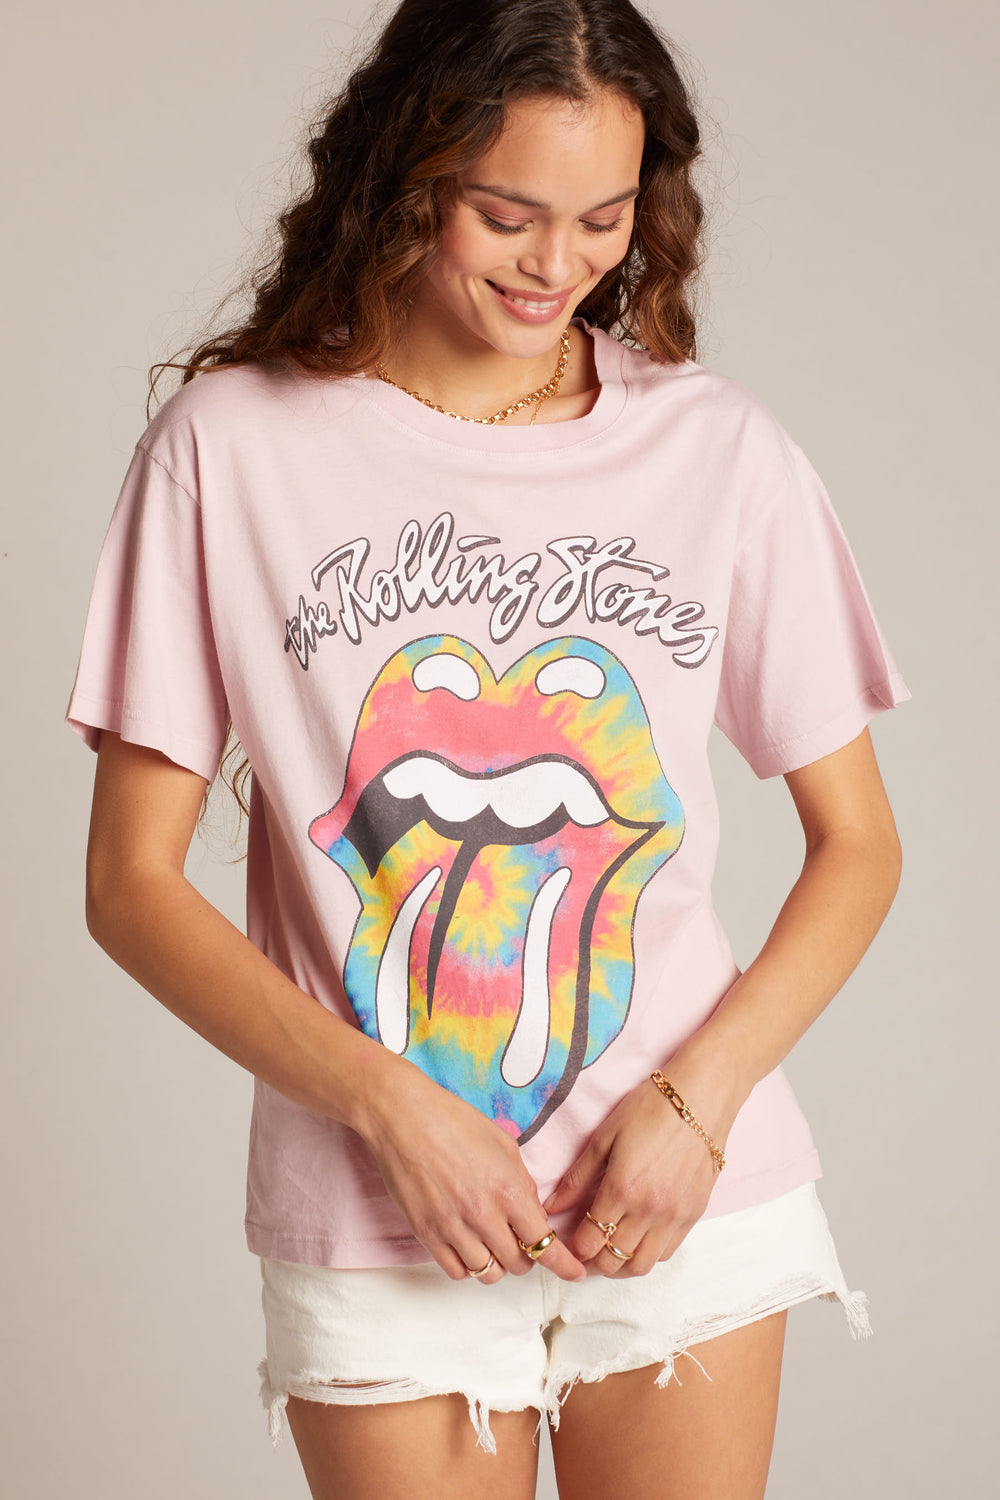 Rolling Stones Tie Dye Tongue Boyfriend Tee